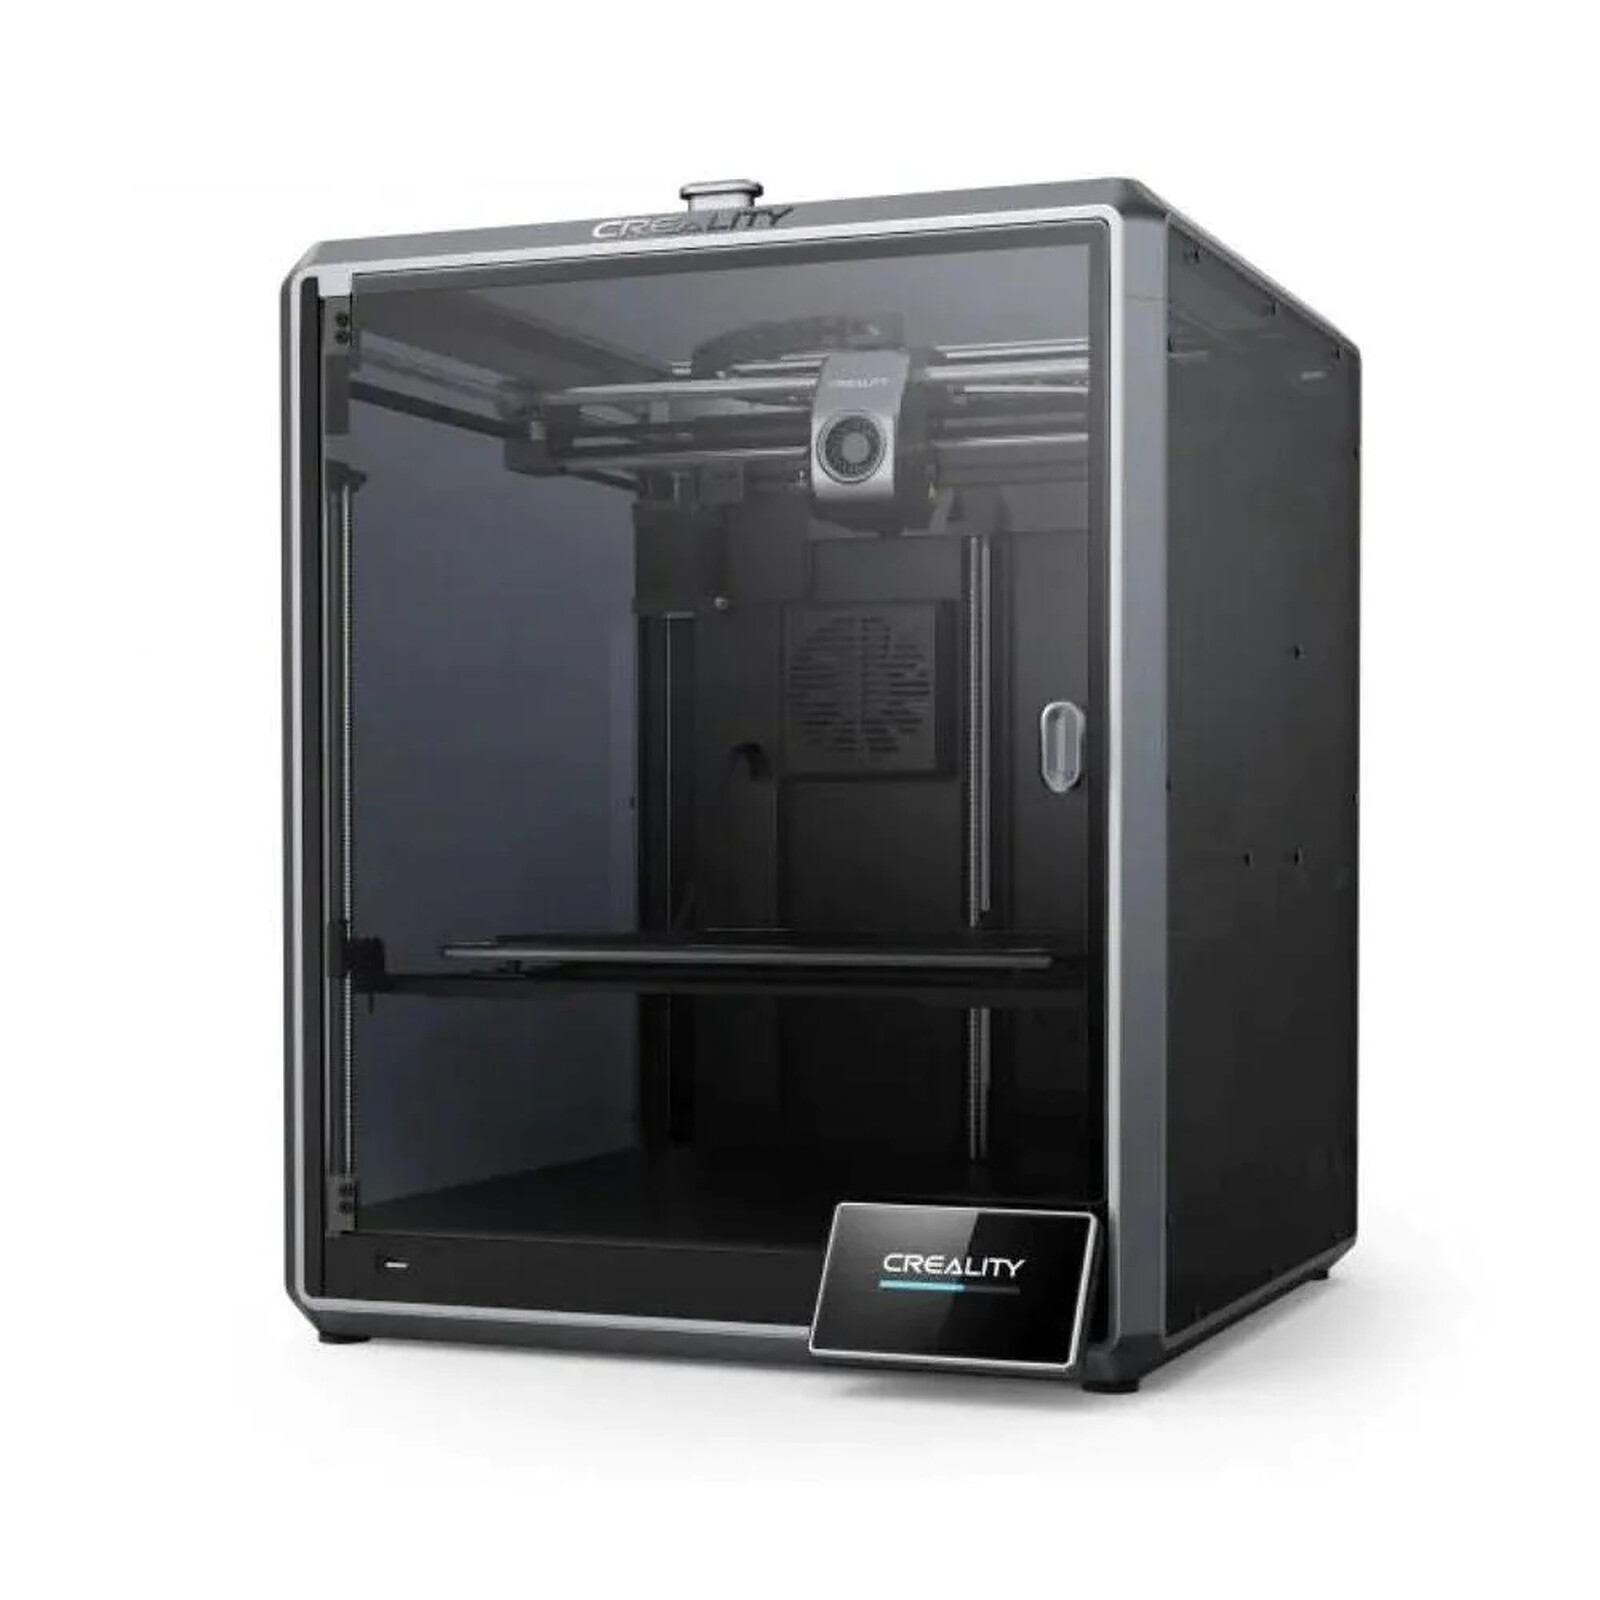 Zortrax buse 0.4mm pour M200 Plus/M300 Plus - Accessoires imprimante 3D -  Garantie 3 ans LDLC